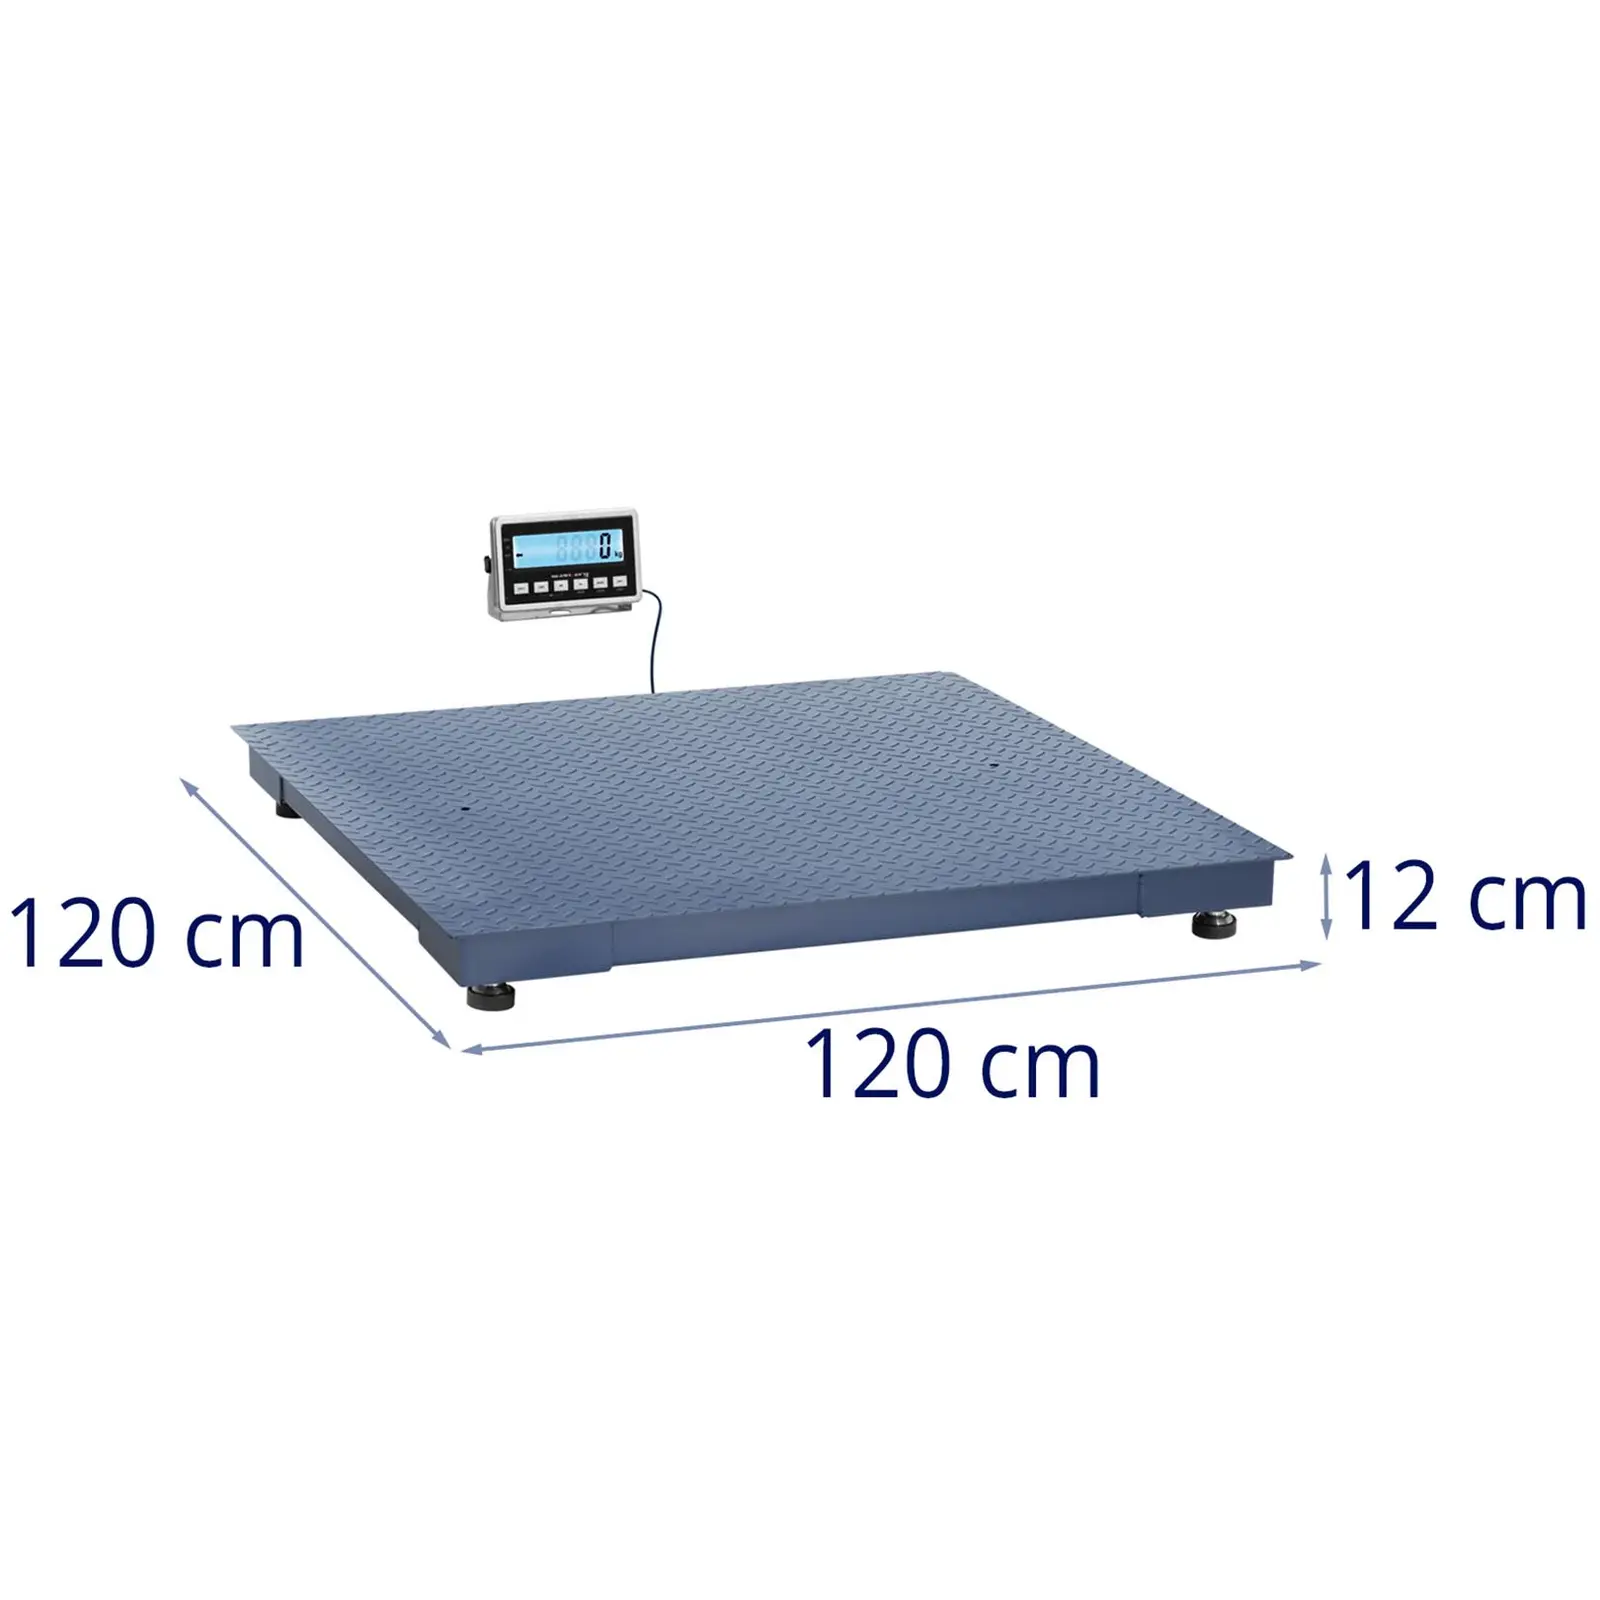 Bilancia da pavimento - 3000 kg / 1 kg - 1200 x 1200 mm - LCD